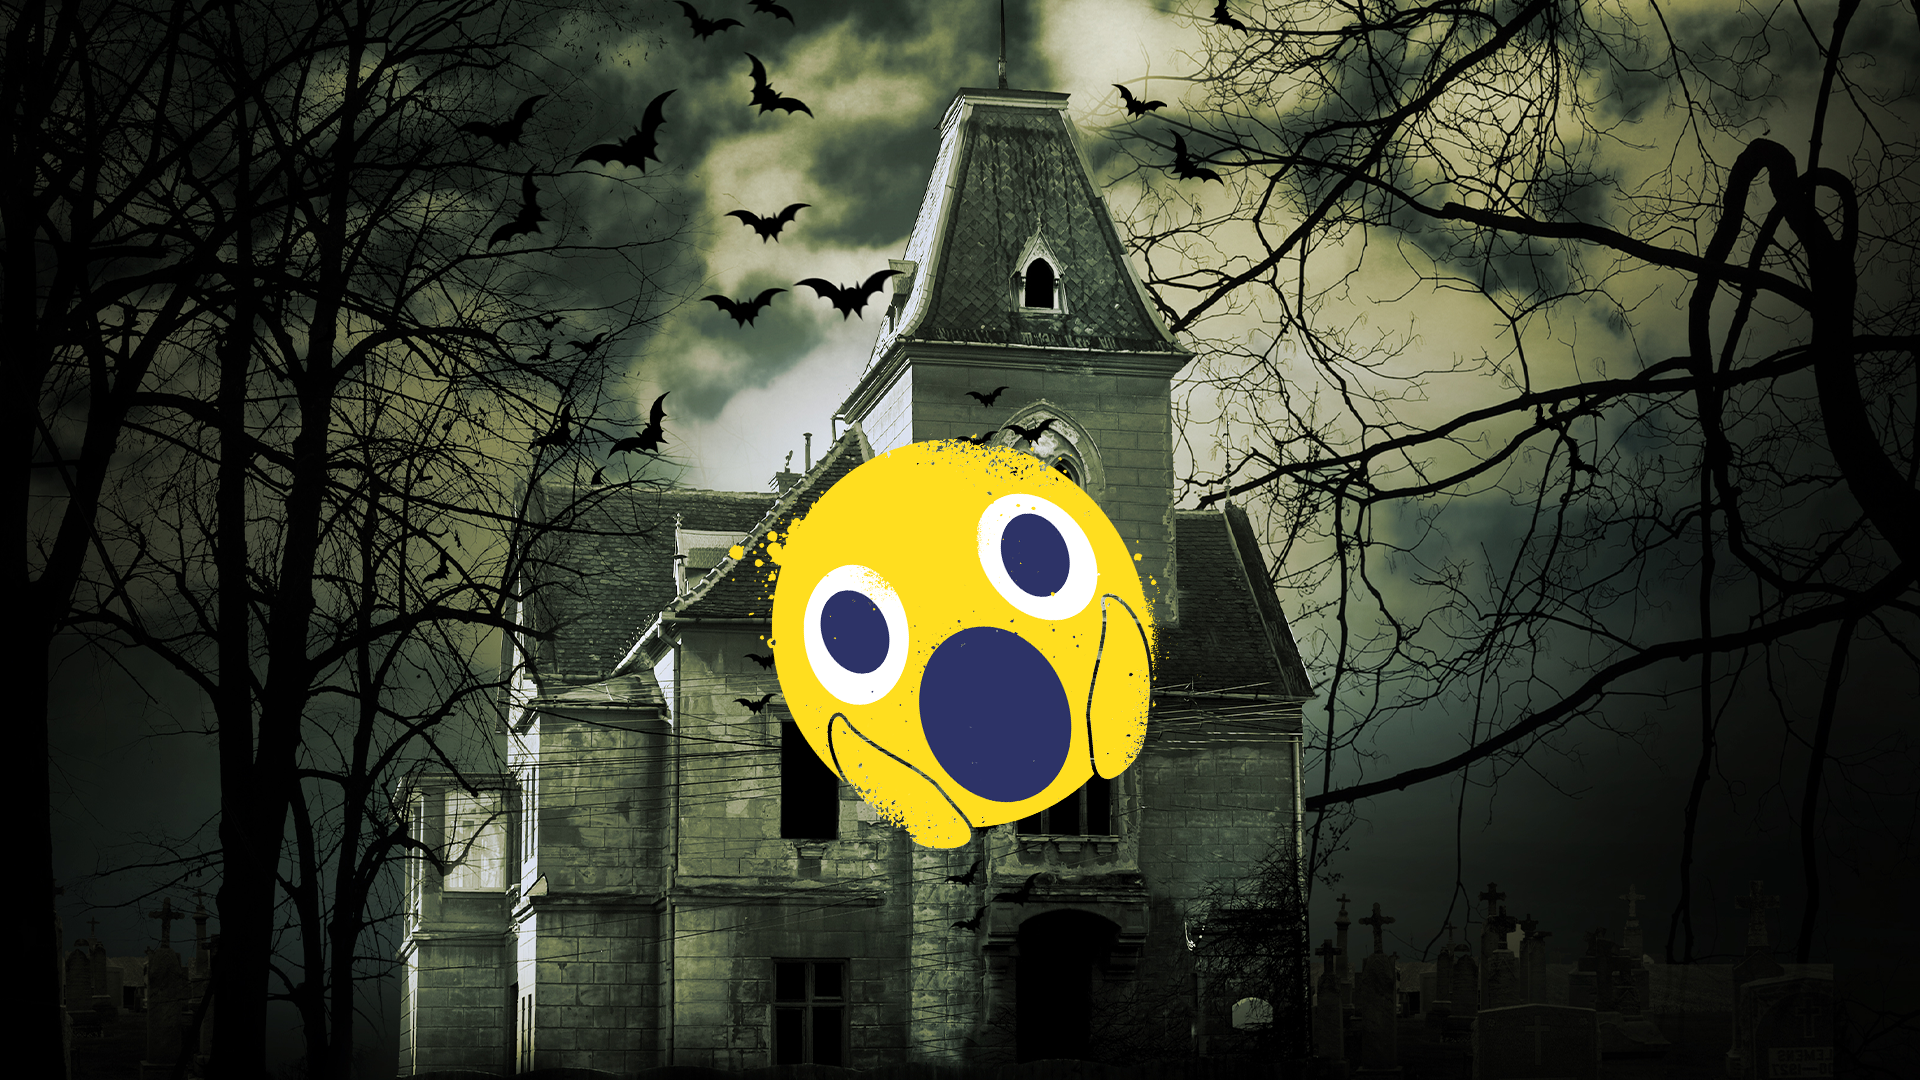 Spooky house and screaming emoji